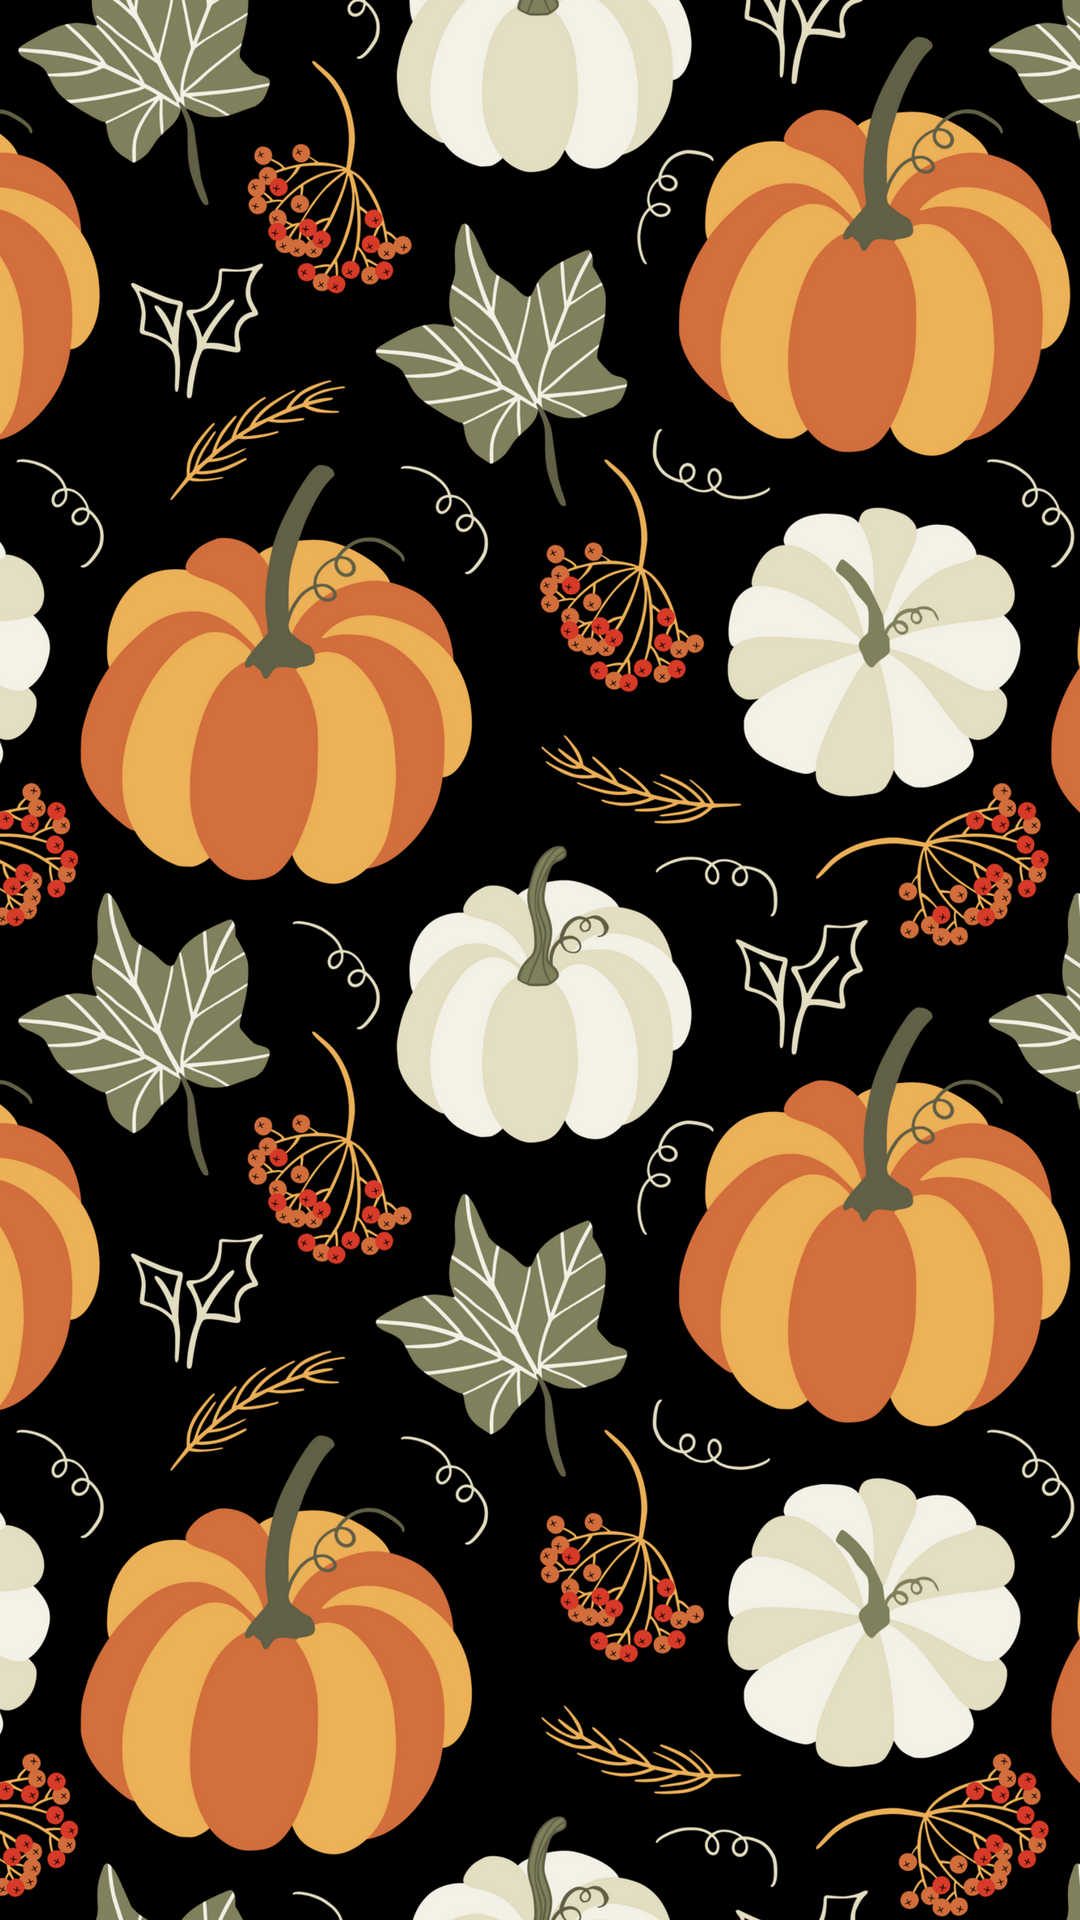 Pumpkin Graphic Smart Phone Wallpaper - Iphone Fall Pumpkin Background - HD Wallpaper 